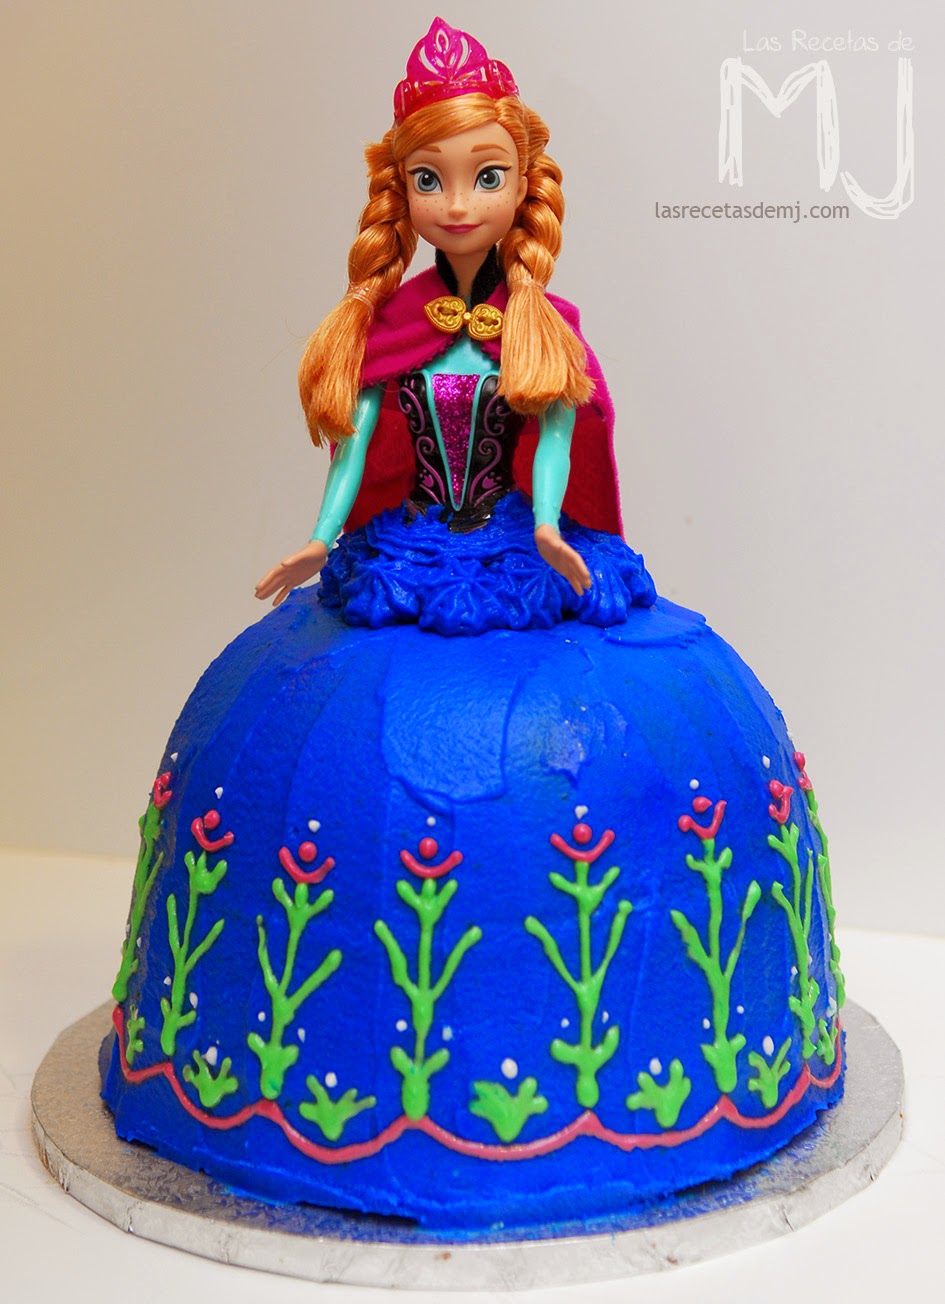 Cómo hacer una tarta decorada de Frozen 